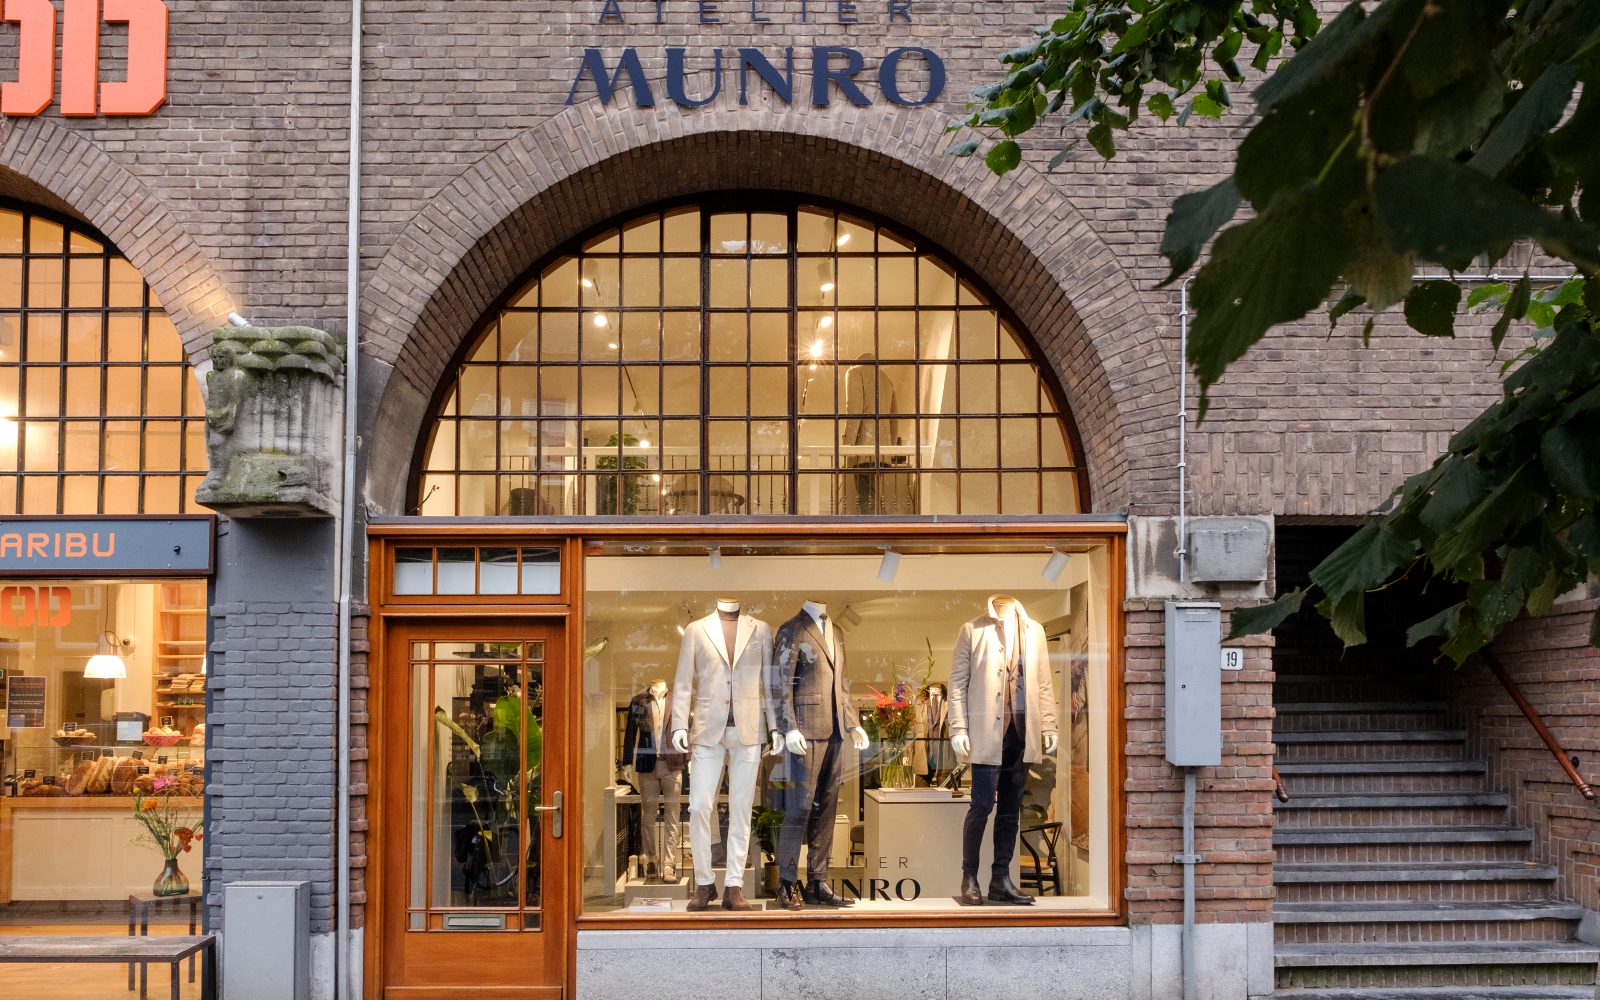 Atelier Munro Beethovenstraat Amsterdam